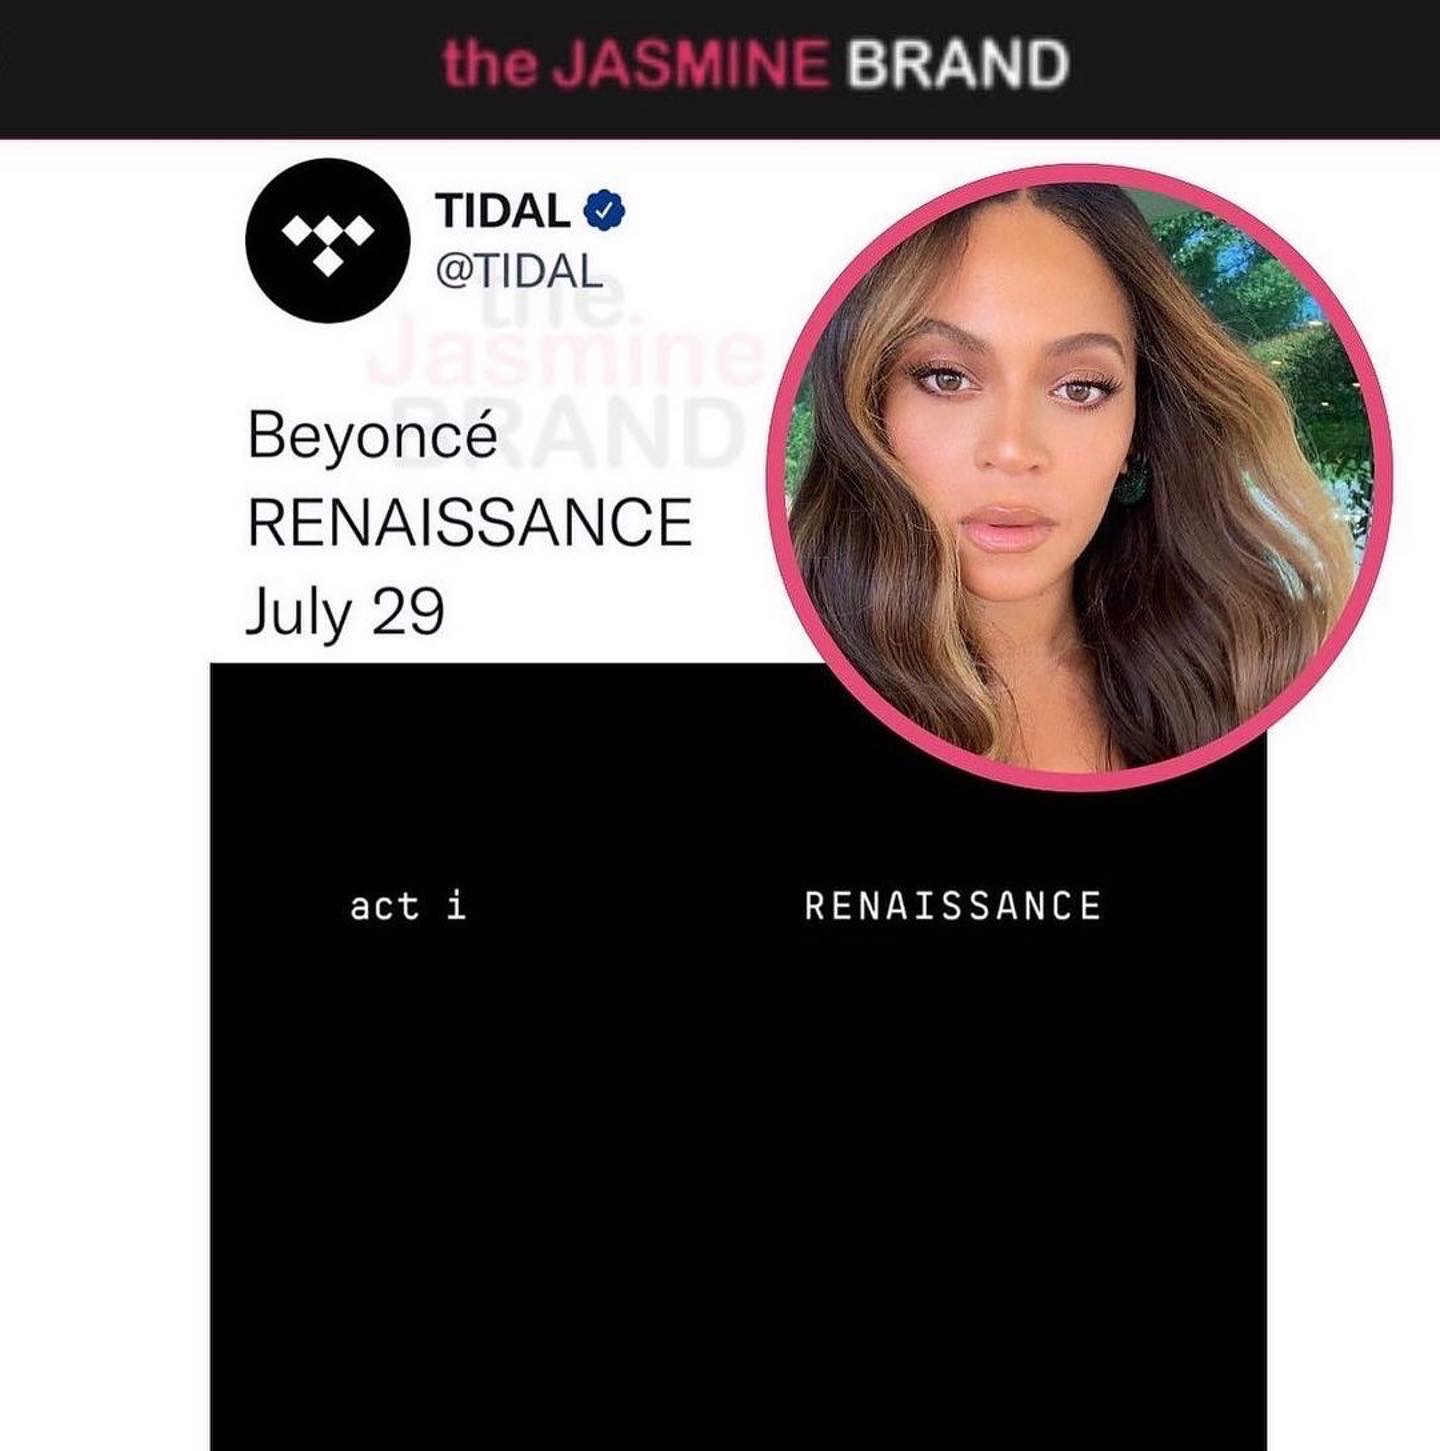 Beyoncé's New Album Renaissance Out Next Month